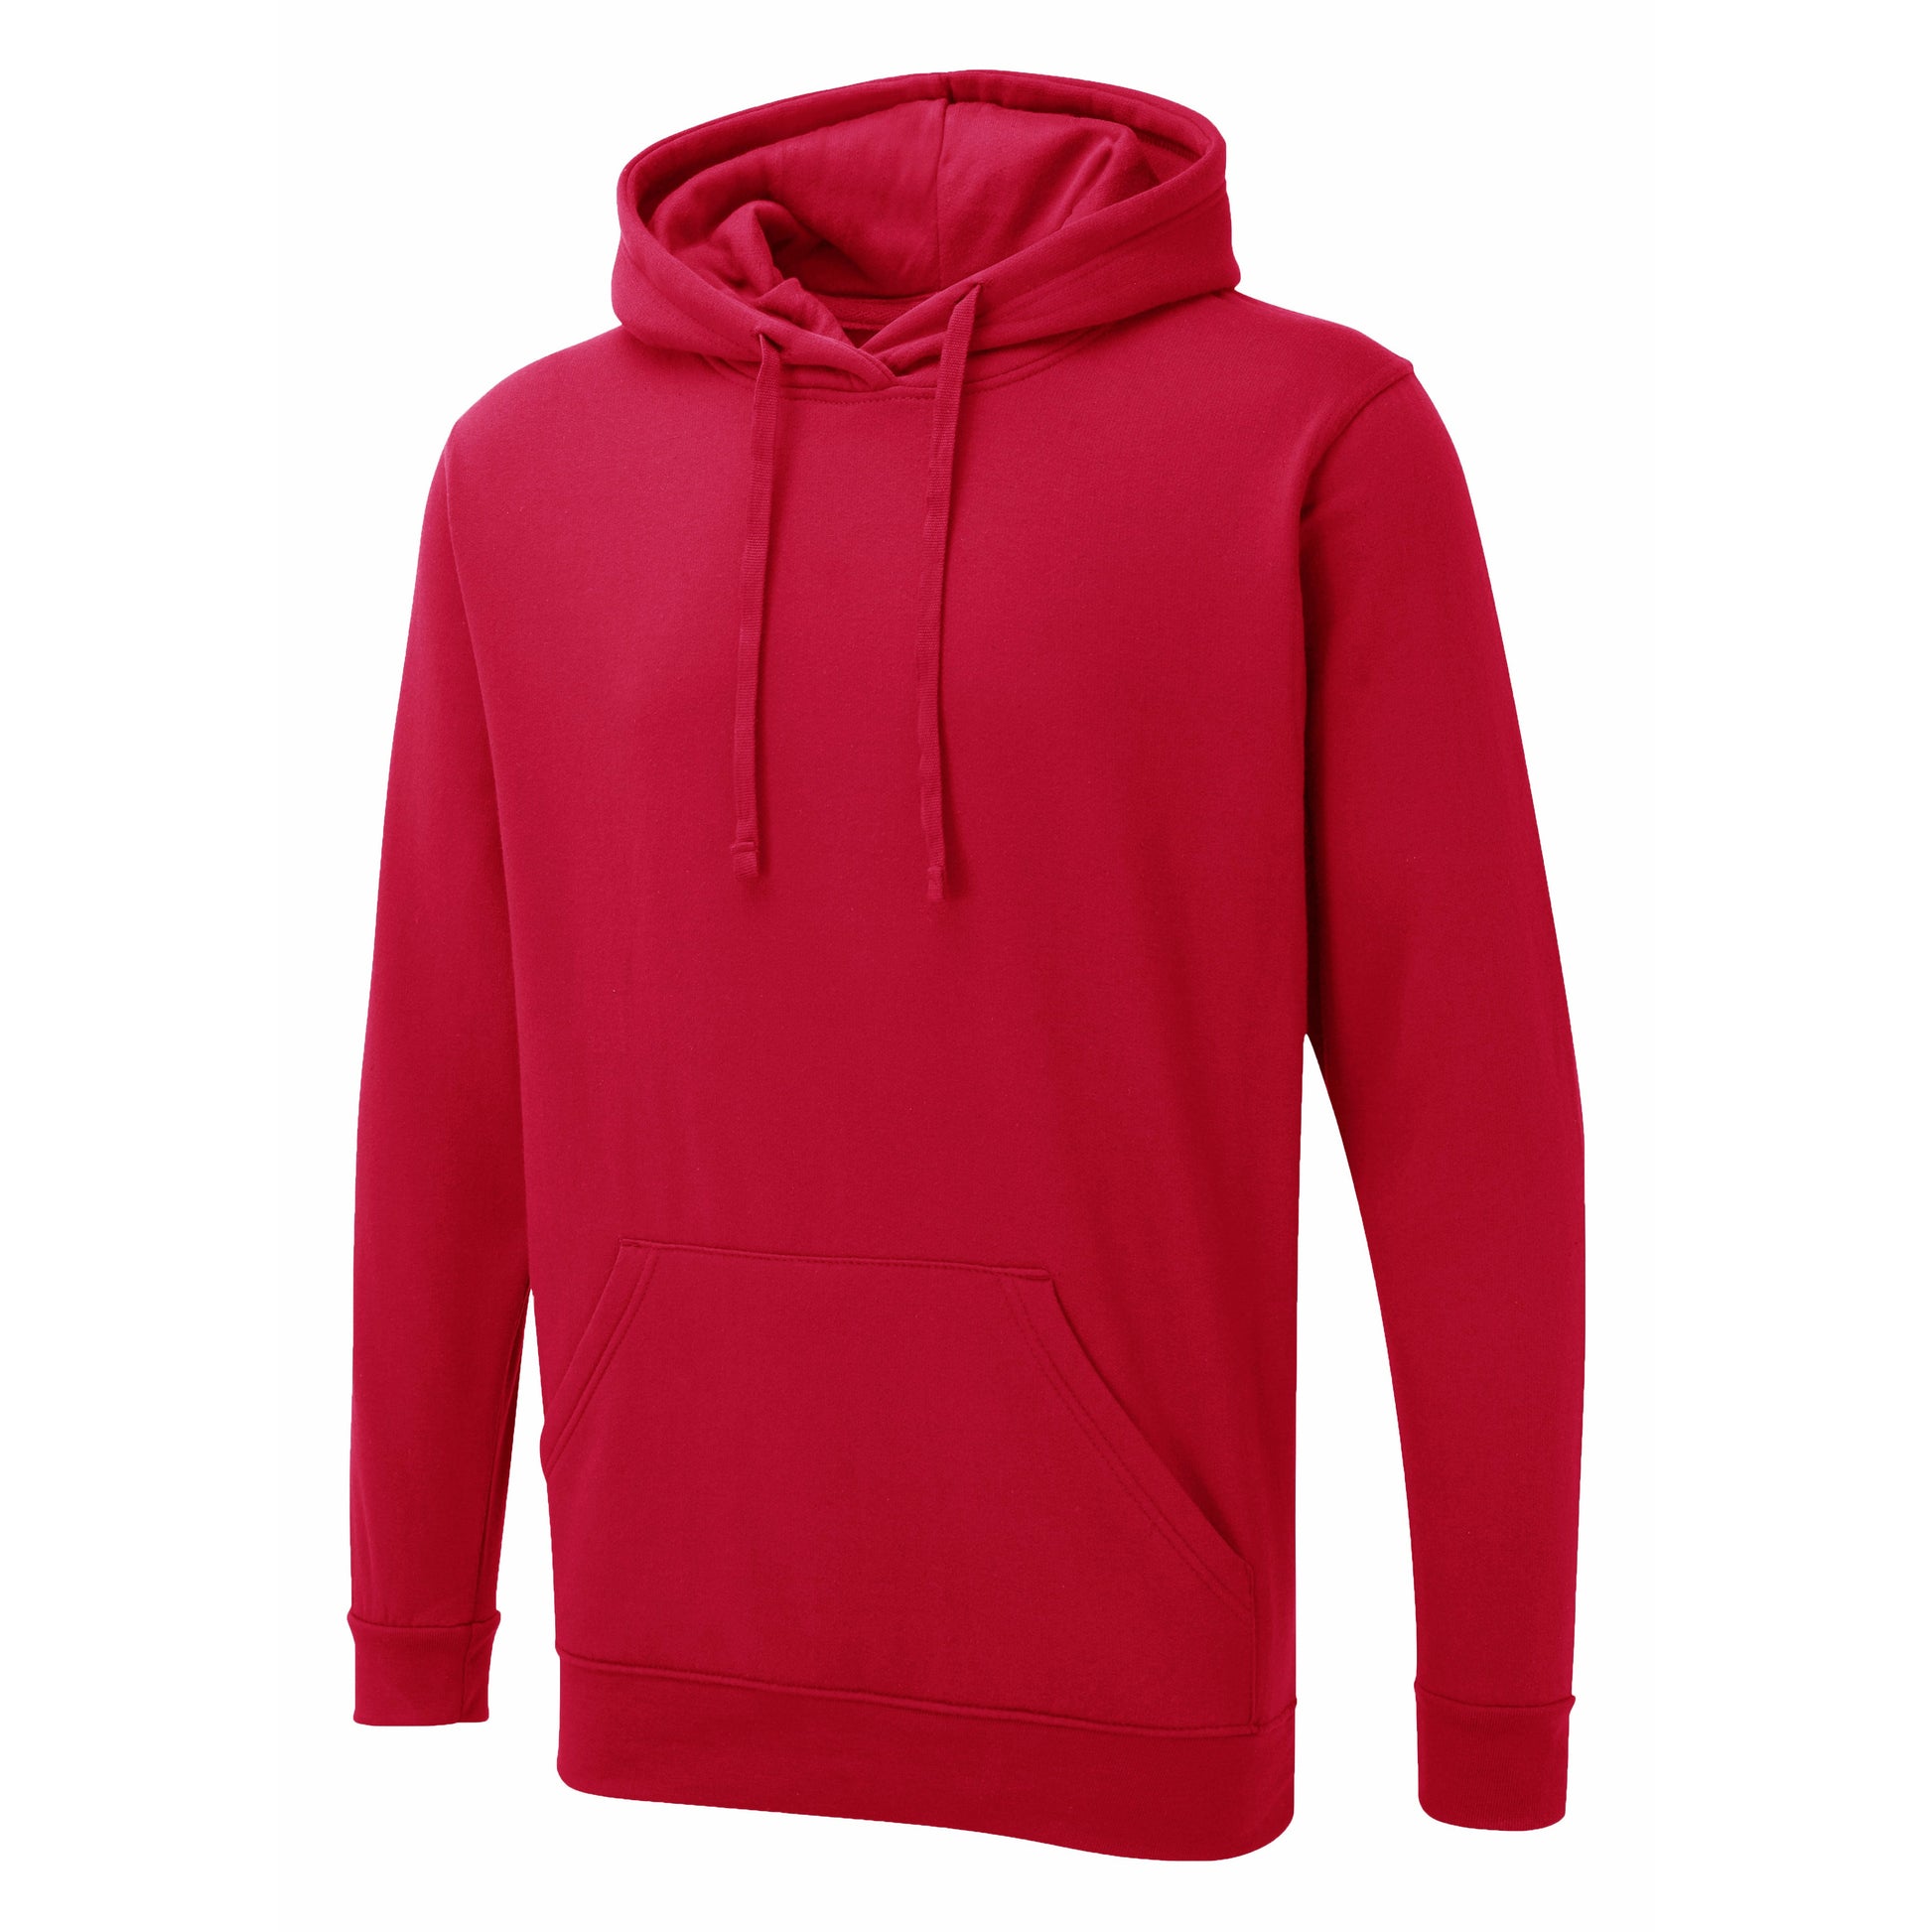 Red UX hoodie